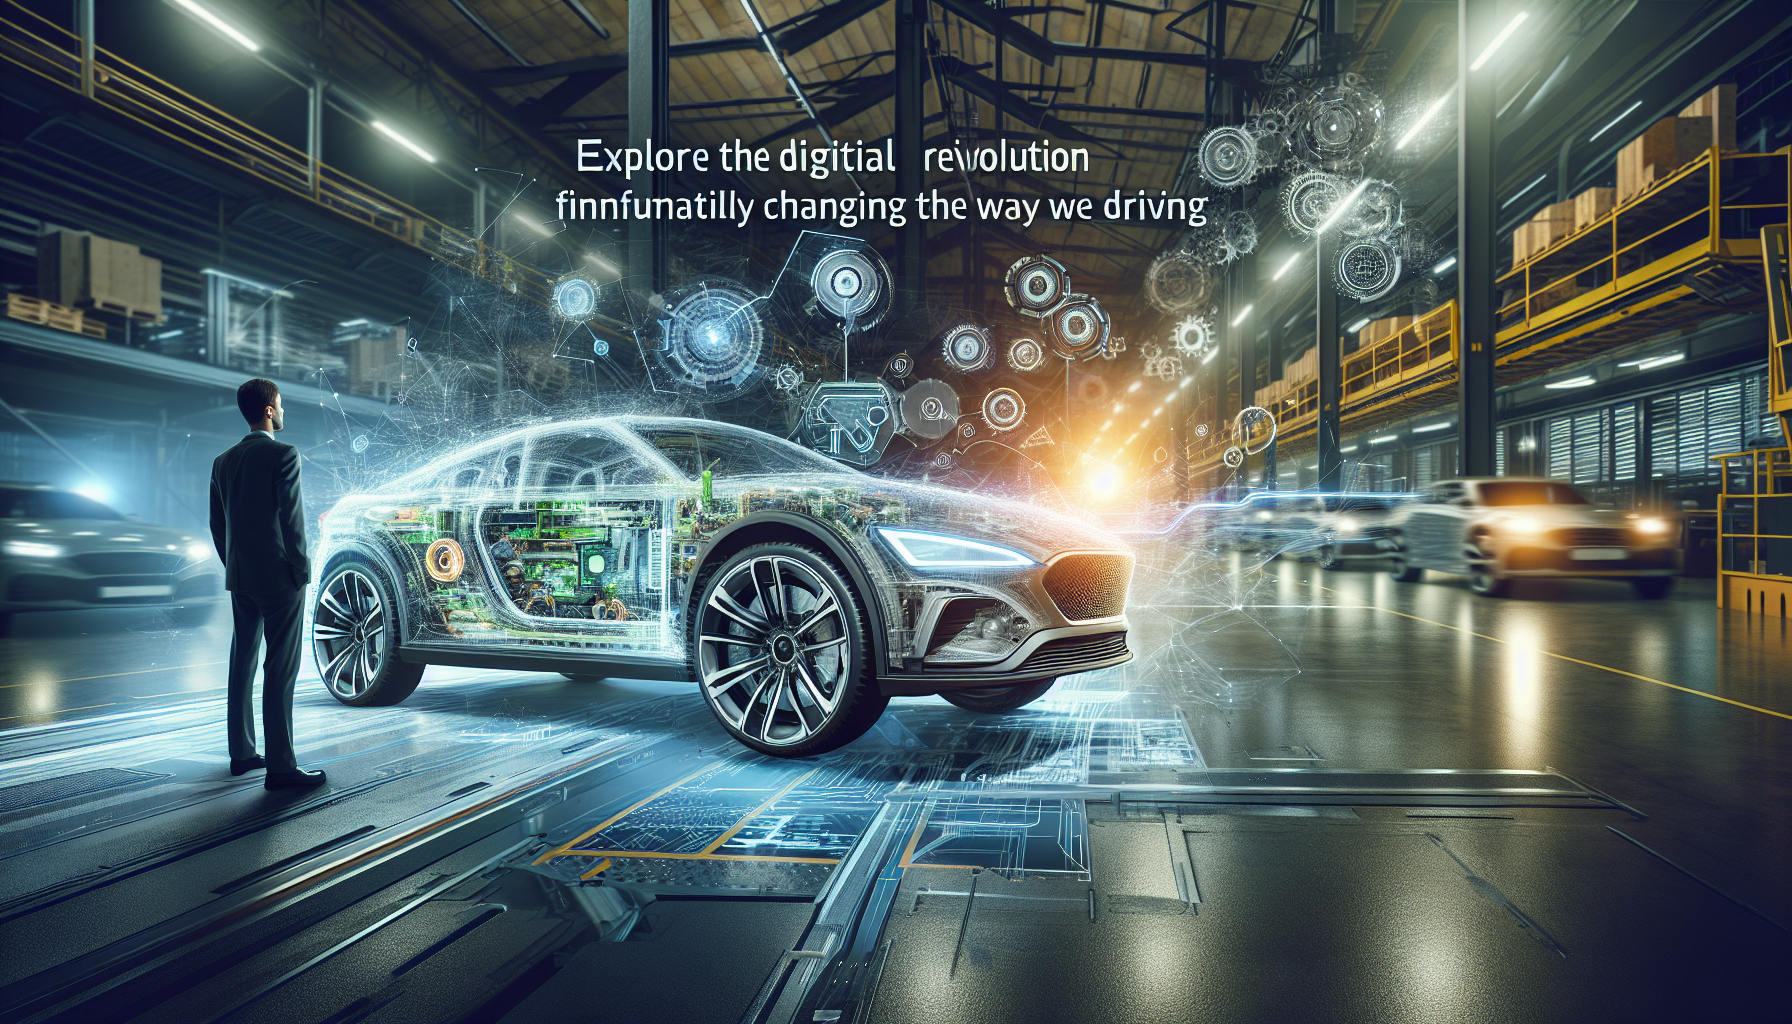 descoperi cum tehnologia digitală revoluționează industria auto cu Hyundai. inovații revoluționare care împing limitele conducerii și redefinesc experiența auto.